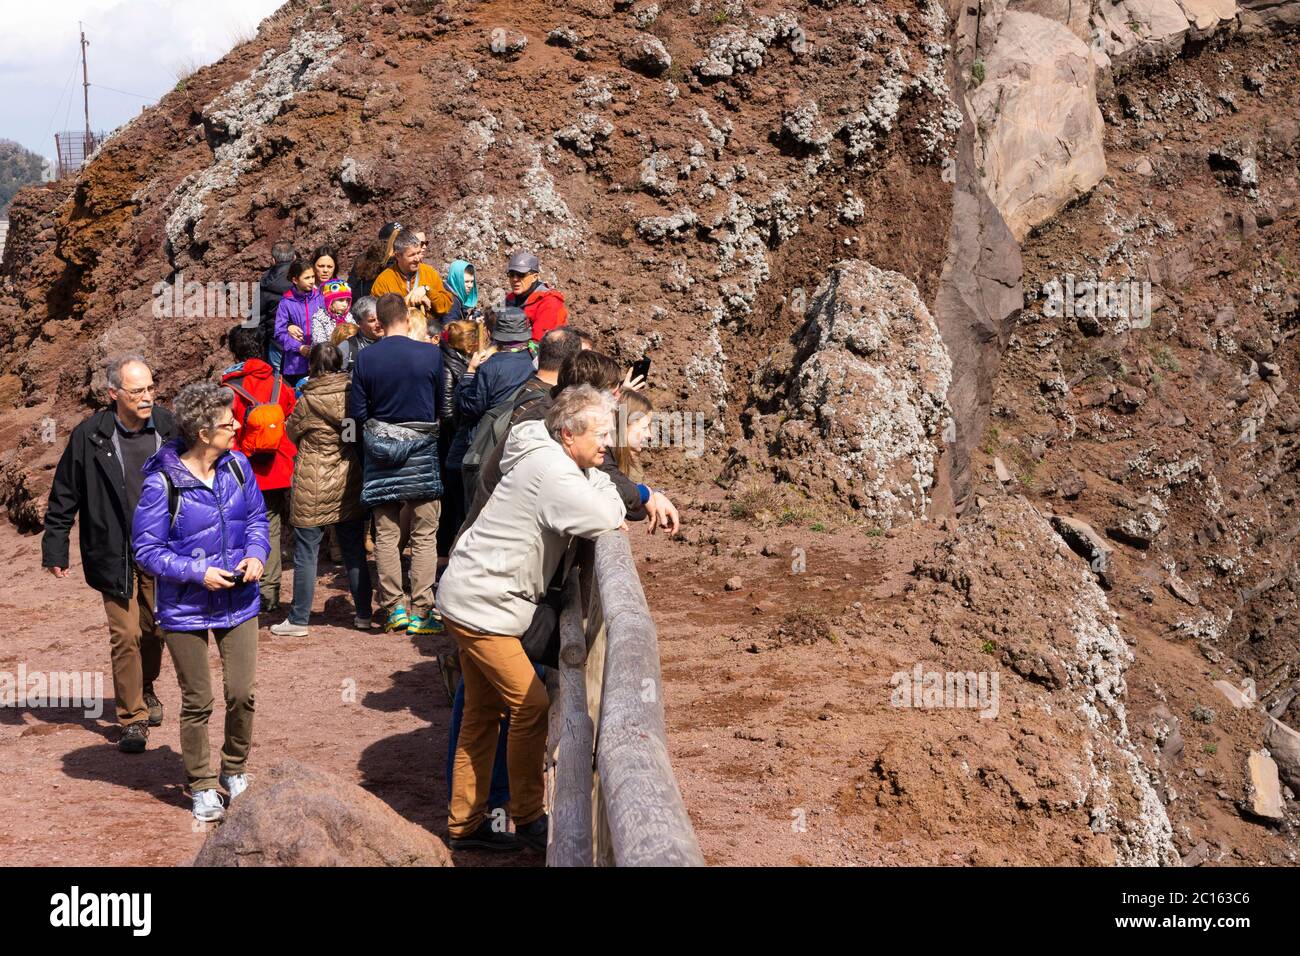 Touristes et visiteurs au sommet / cône sur le bord du sommet caldera du Vésuve, un volcan actif (somma-stratovolcan), Campanie, Italie Banque D'Images